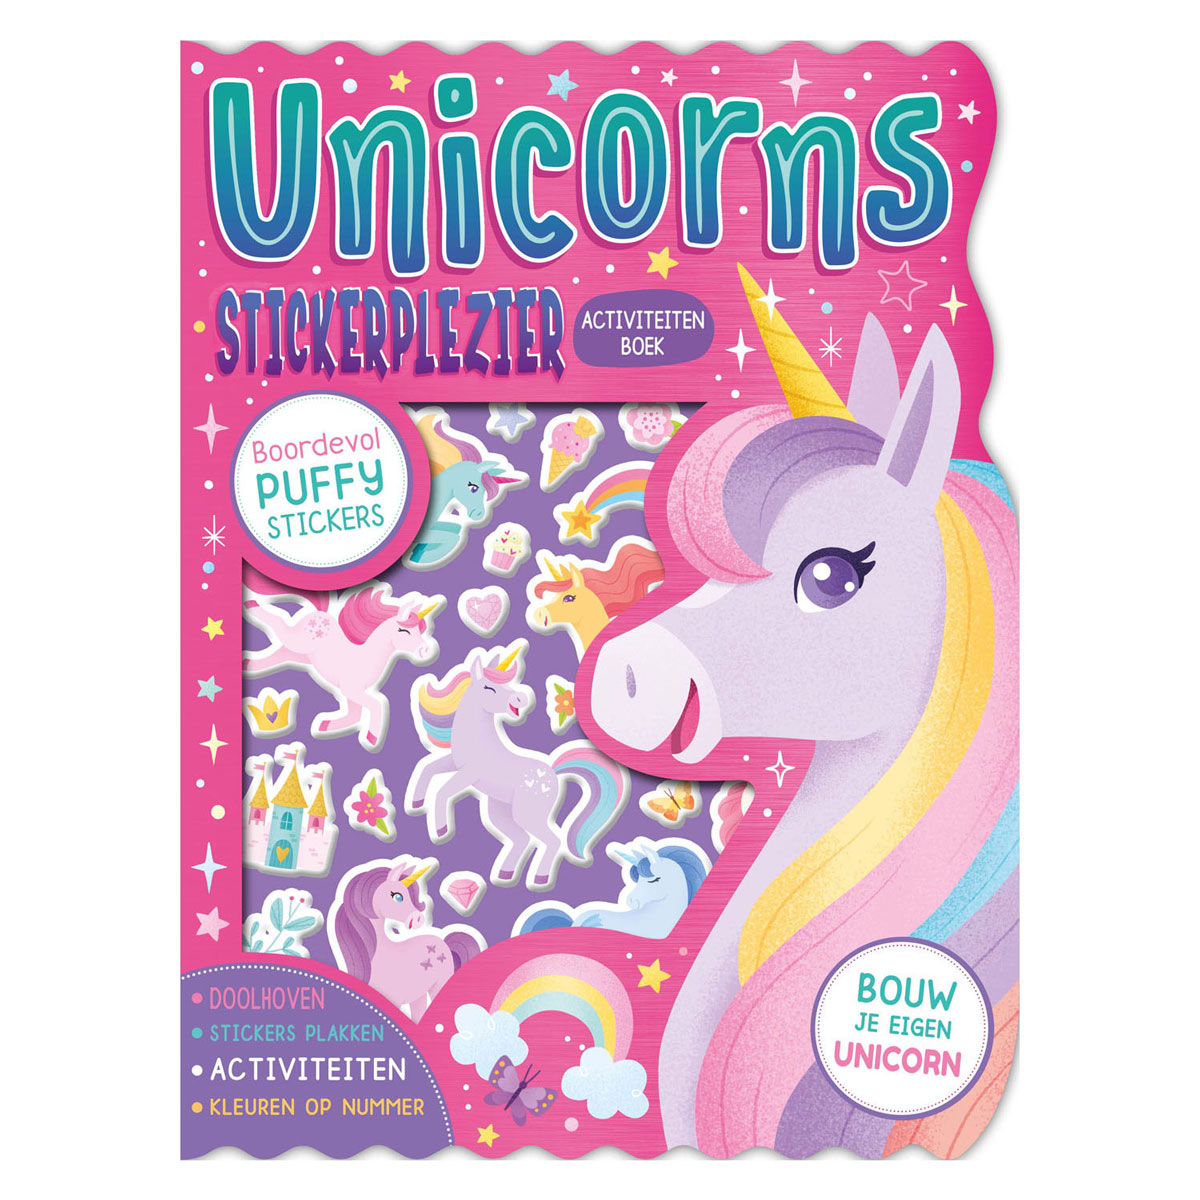 Unicorns Stickerplezier Stickerboek